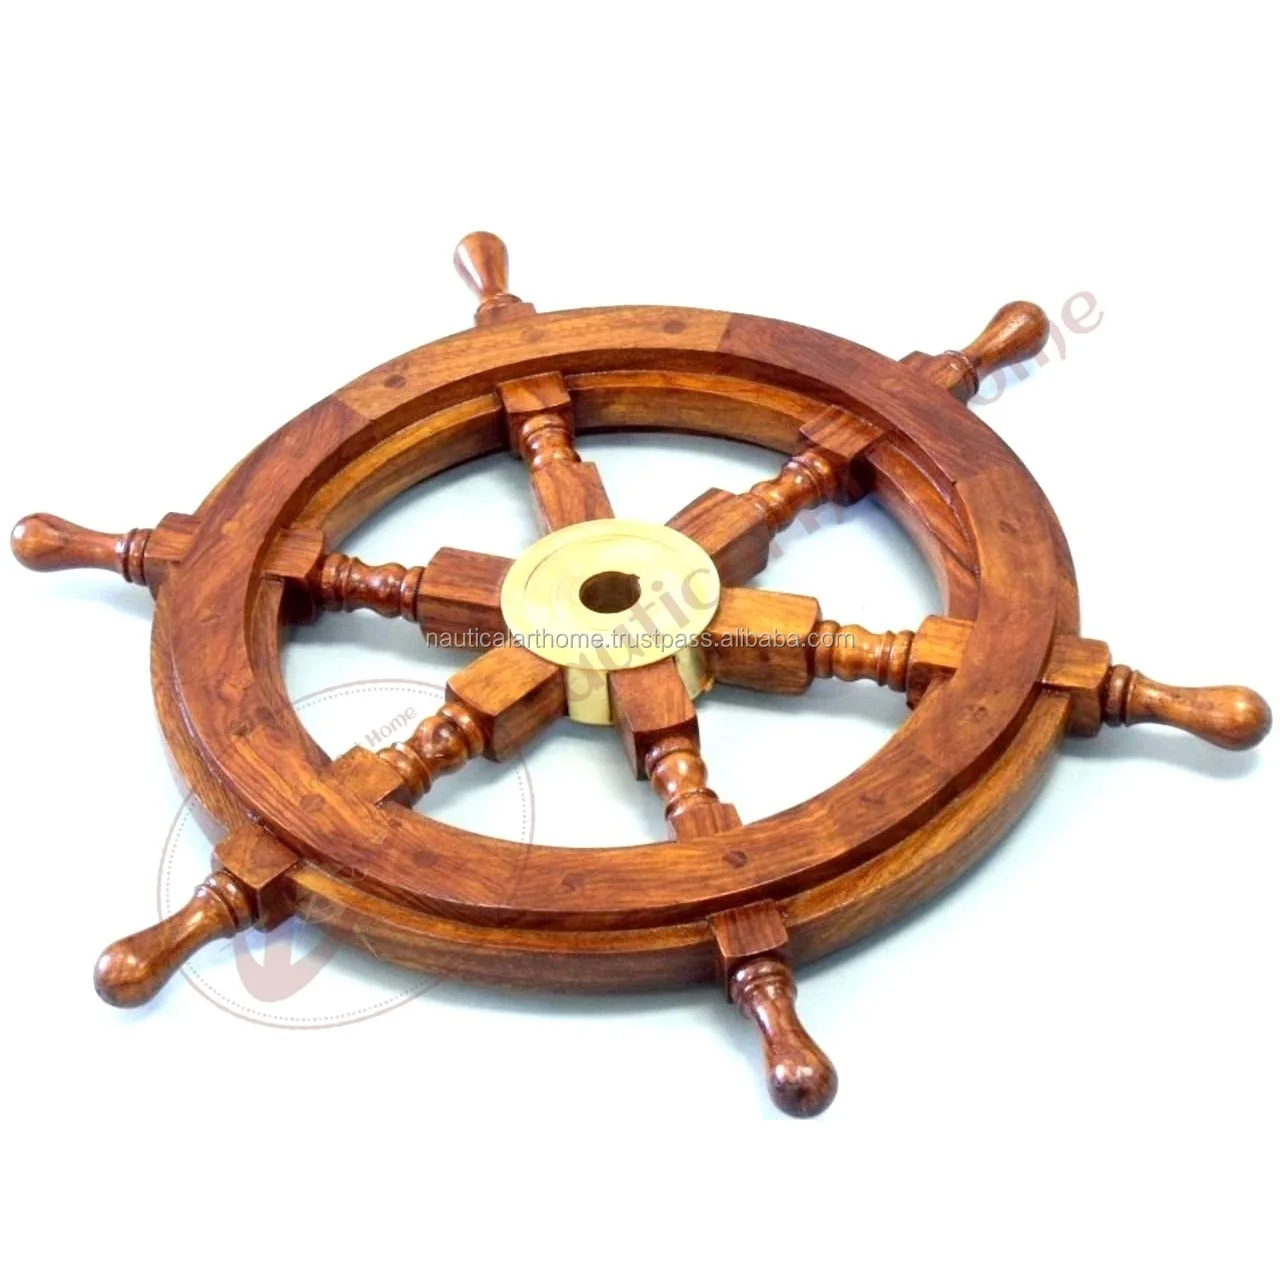 Antique Maritime Nautical Wheel Wooden Ship Wheel Vintage Unique Decorative Gift